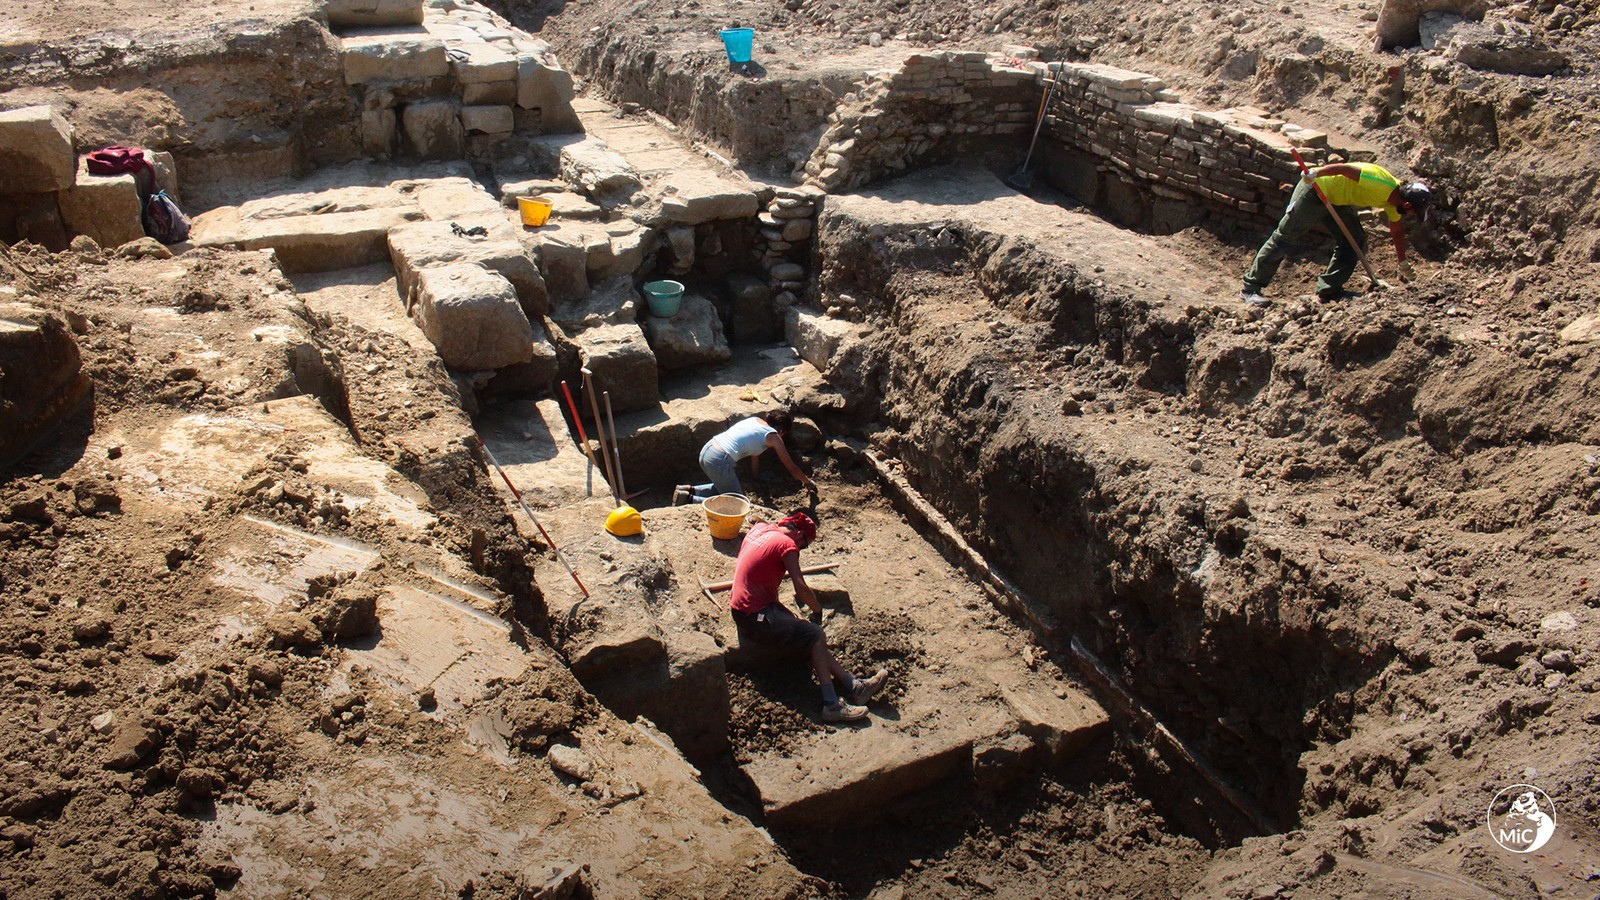 Escavações do templo romano na Itália — Foto: Ministério da Cultura da Itália